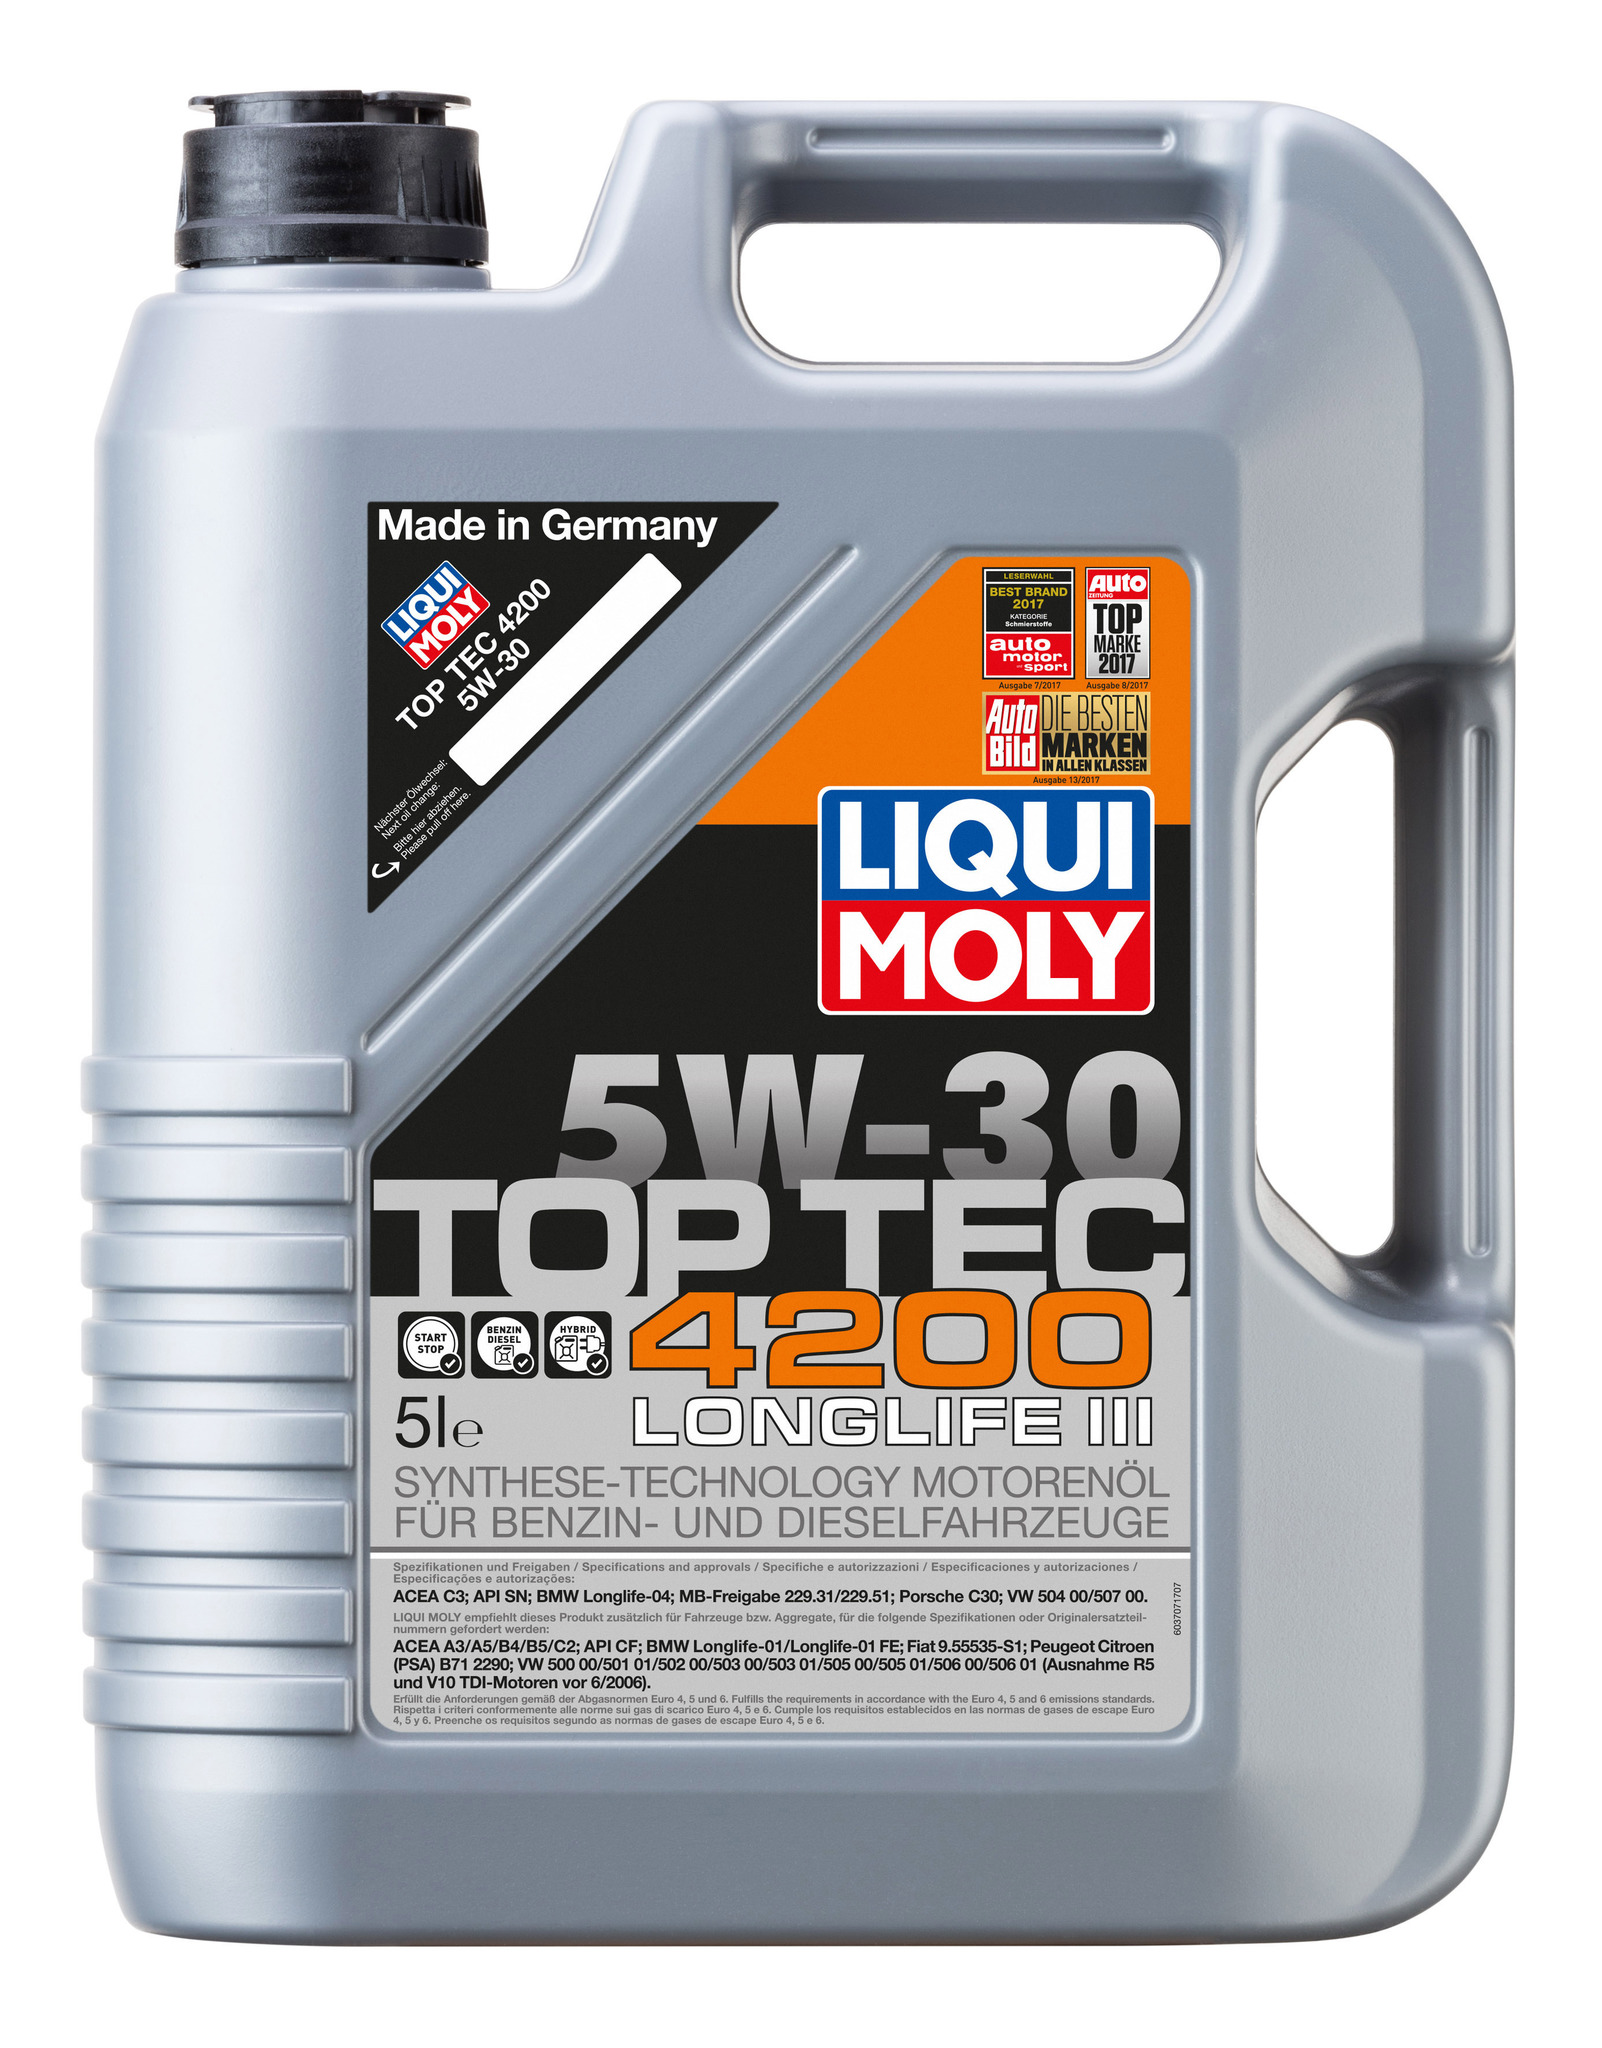 Liqui Moly Ceratec +Масло моторное TOP TEC 4200 5w30 (5л) - набор для двигателя автомобиля